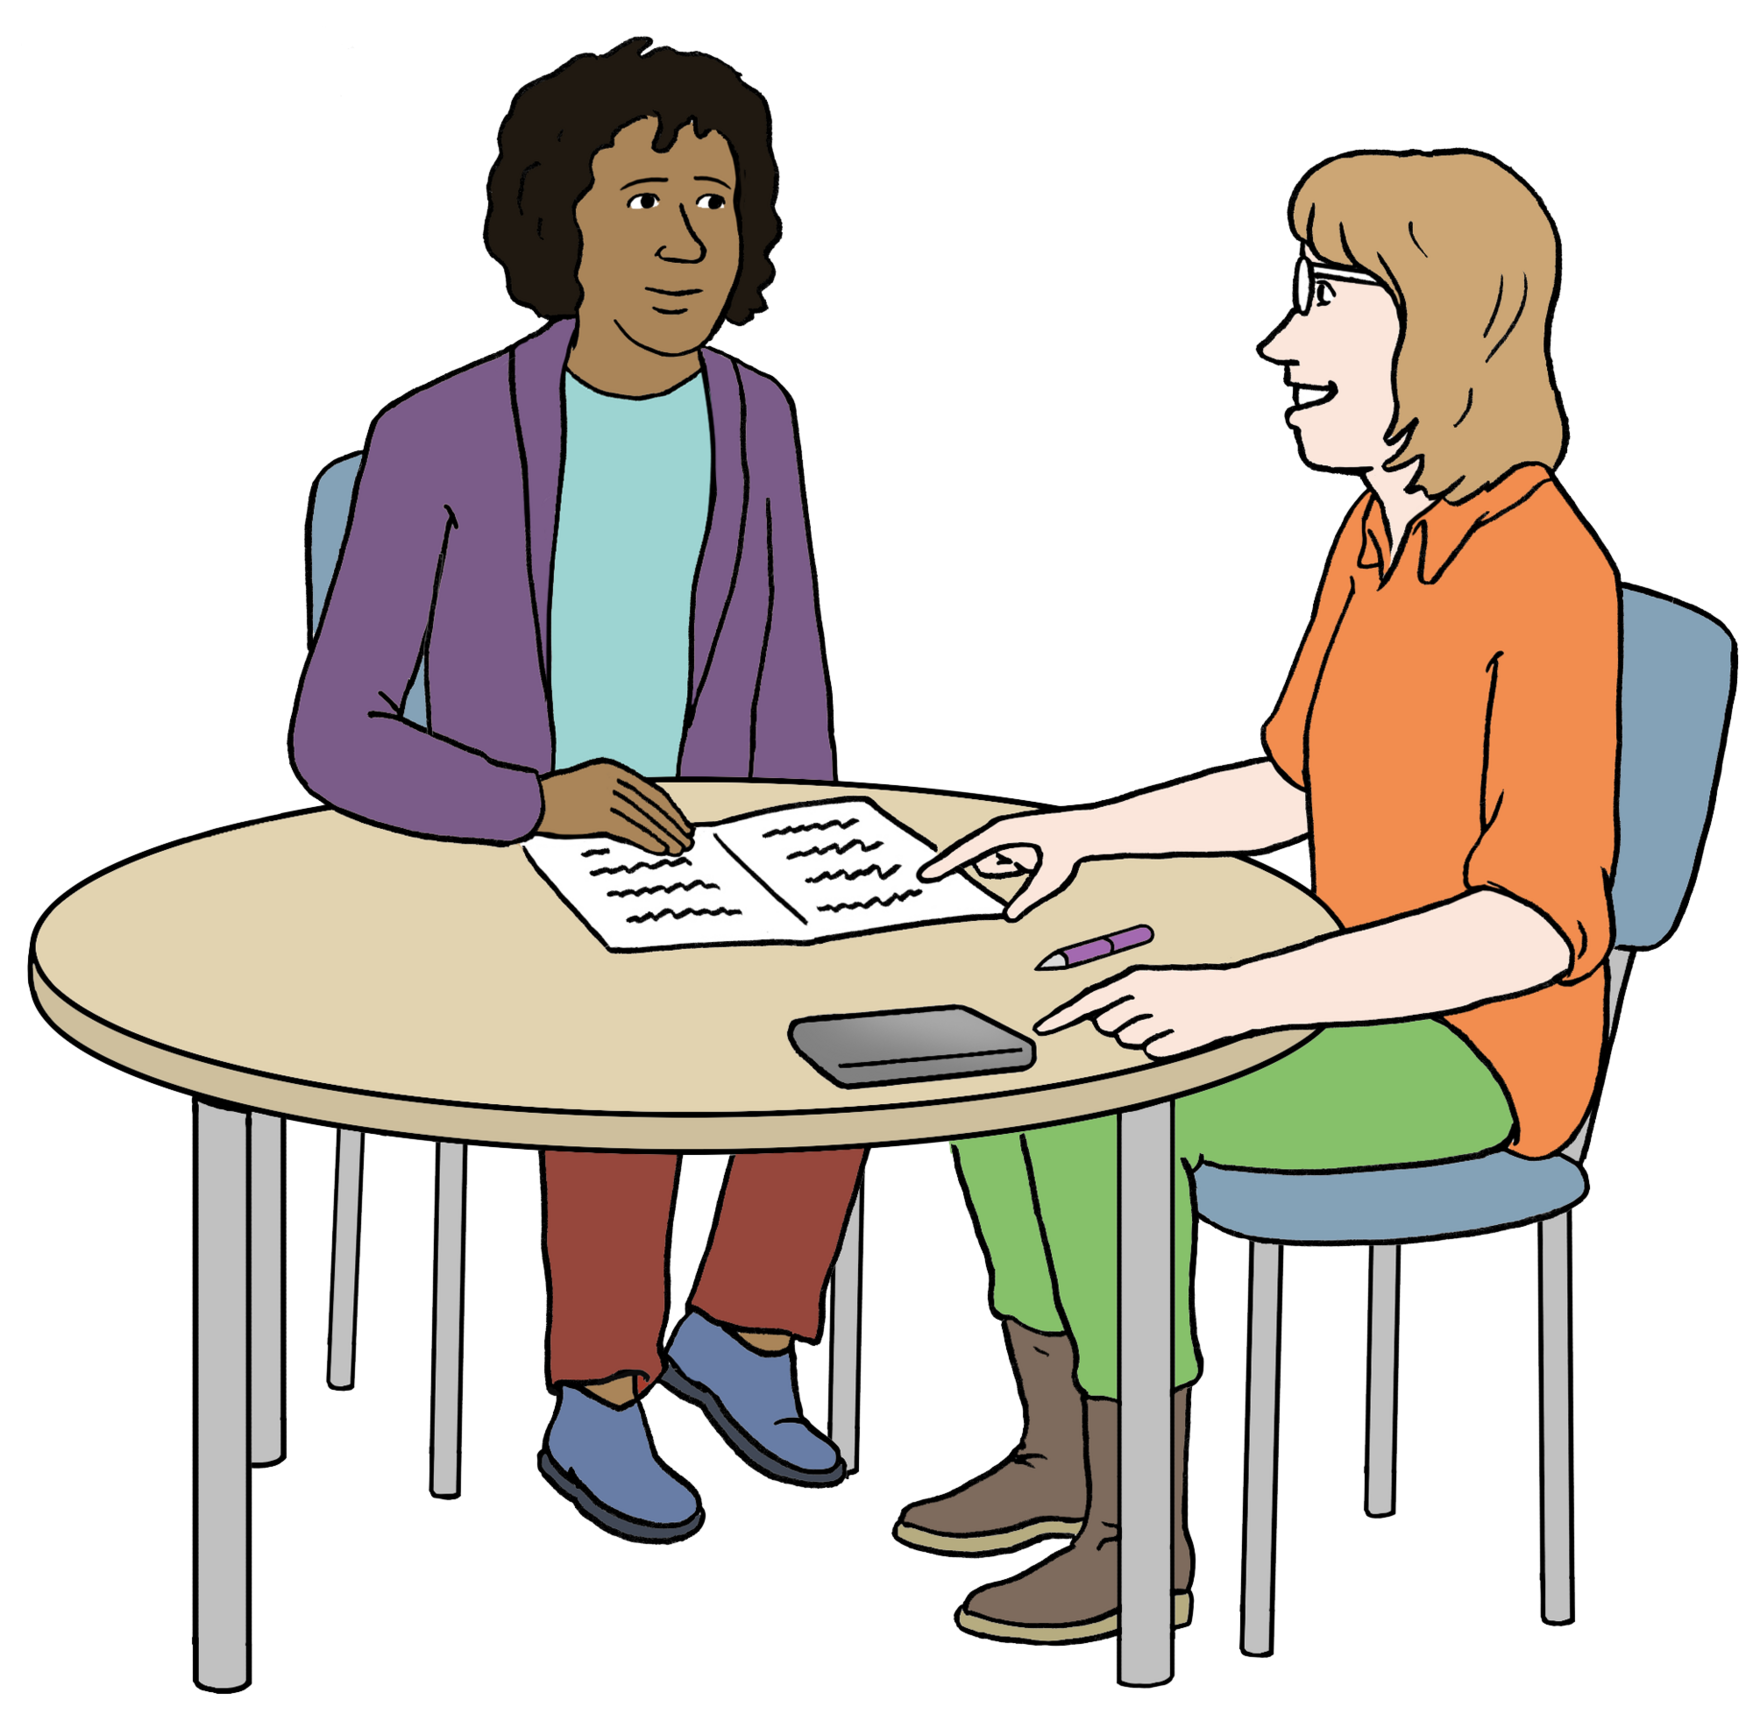 Grafik: Zwei Frauen sitzen am Tisch und sprechen miteinander